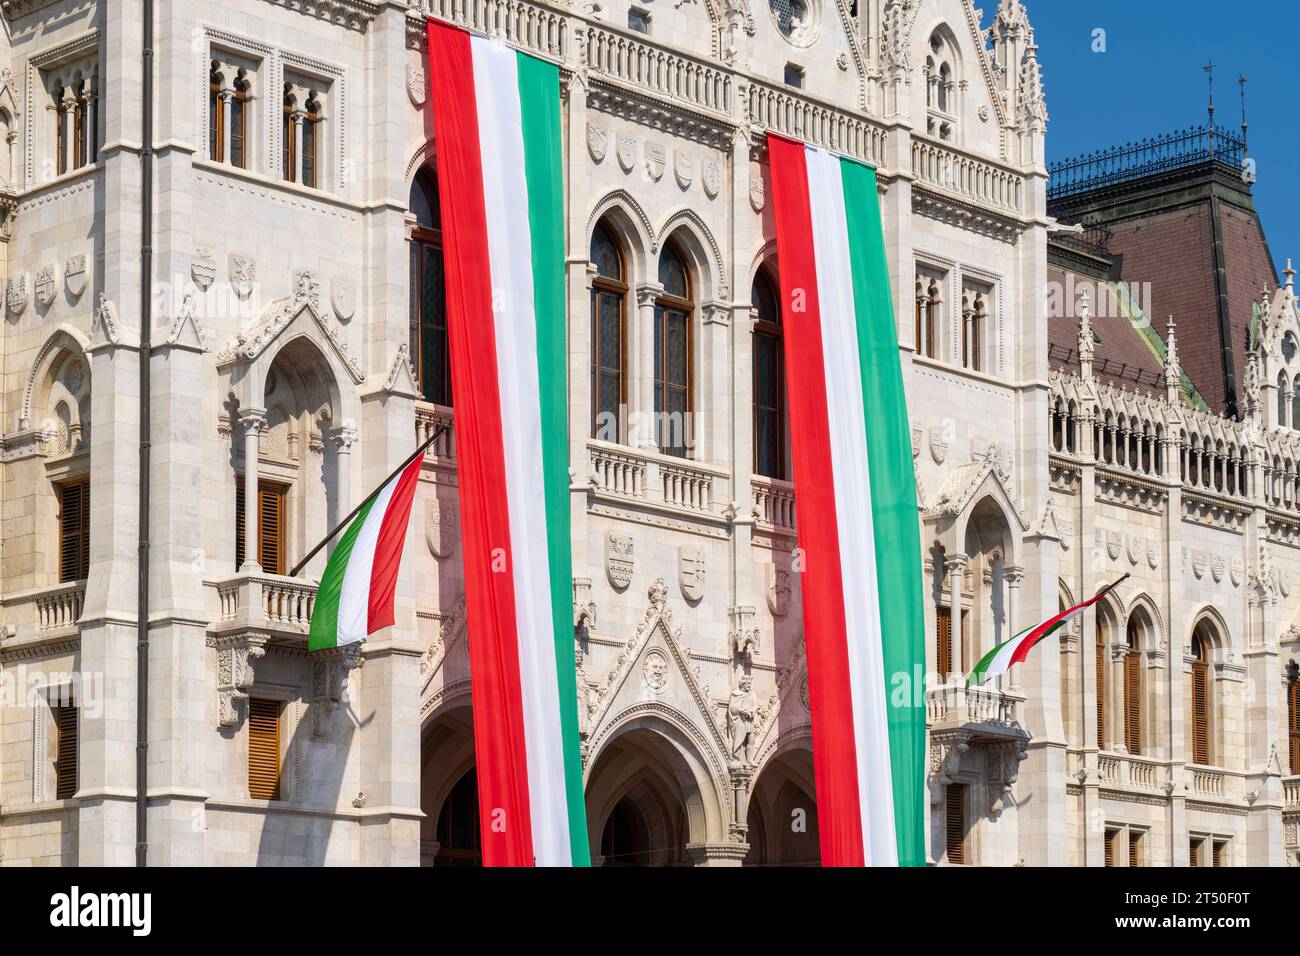 Das neogotische Gebäude des ungarischen Parlaments, das Parlament, ist an einem Nationalfeiertag mit Fahnen in ungarischen Nationalfarben verziert Stockfoto